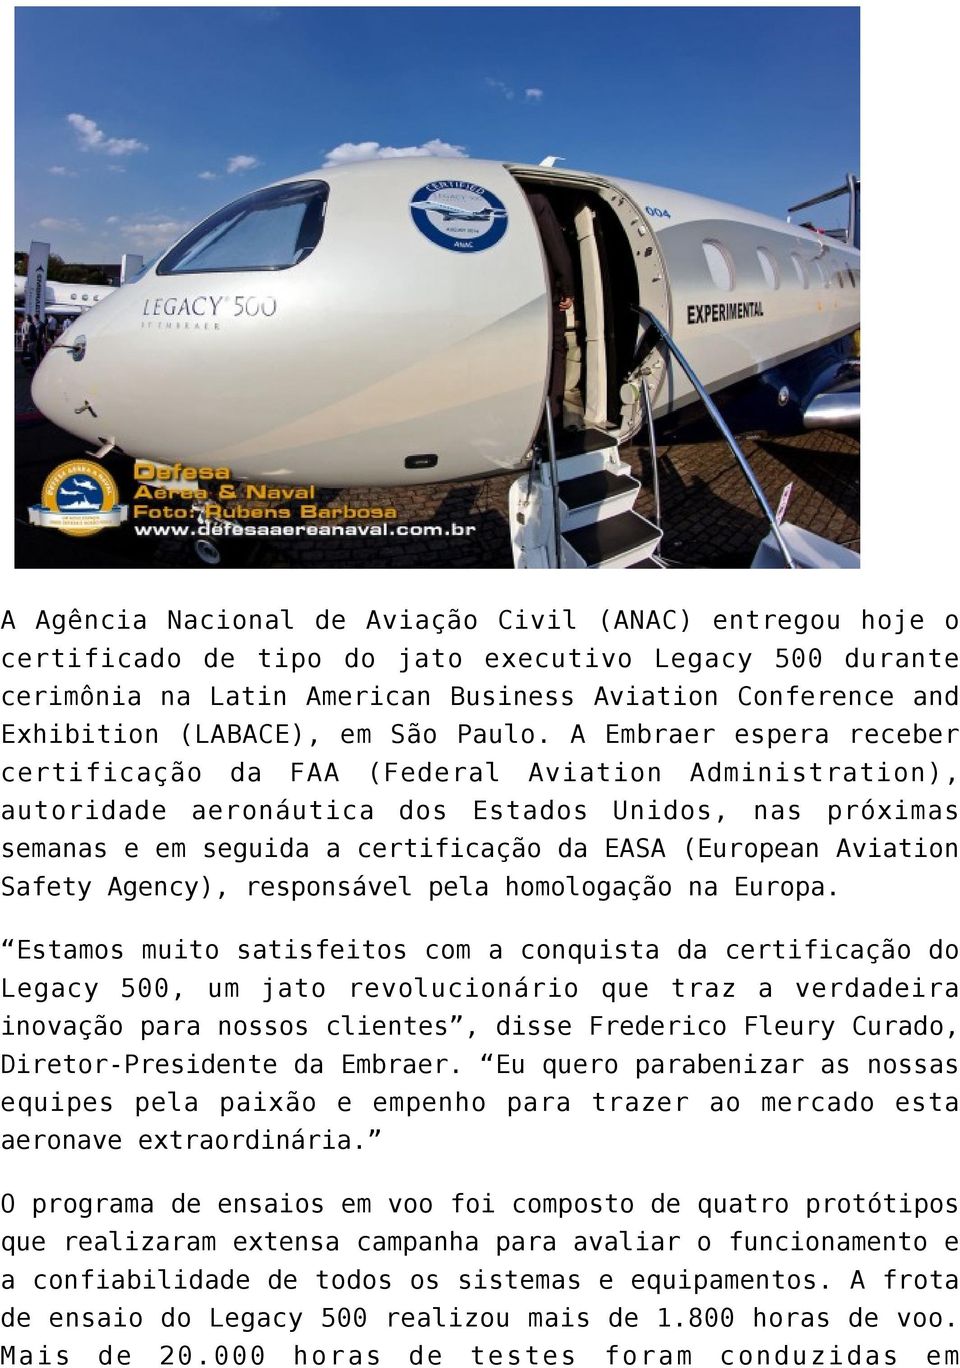 A Embraer espera receber certificação da FAA (Federal Aviation Administration), autoridade aeronáutica dos Estados Unidos, nas próximas semanas e em seguida a certificação da EASA (European Aviation